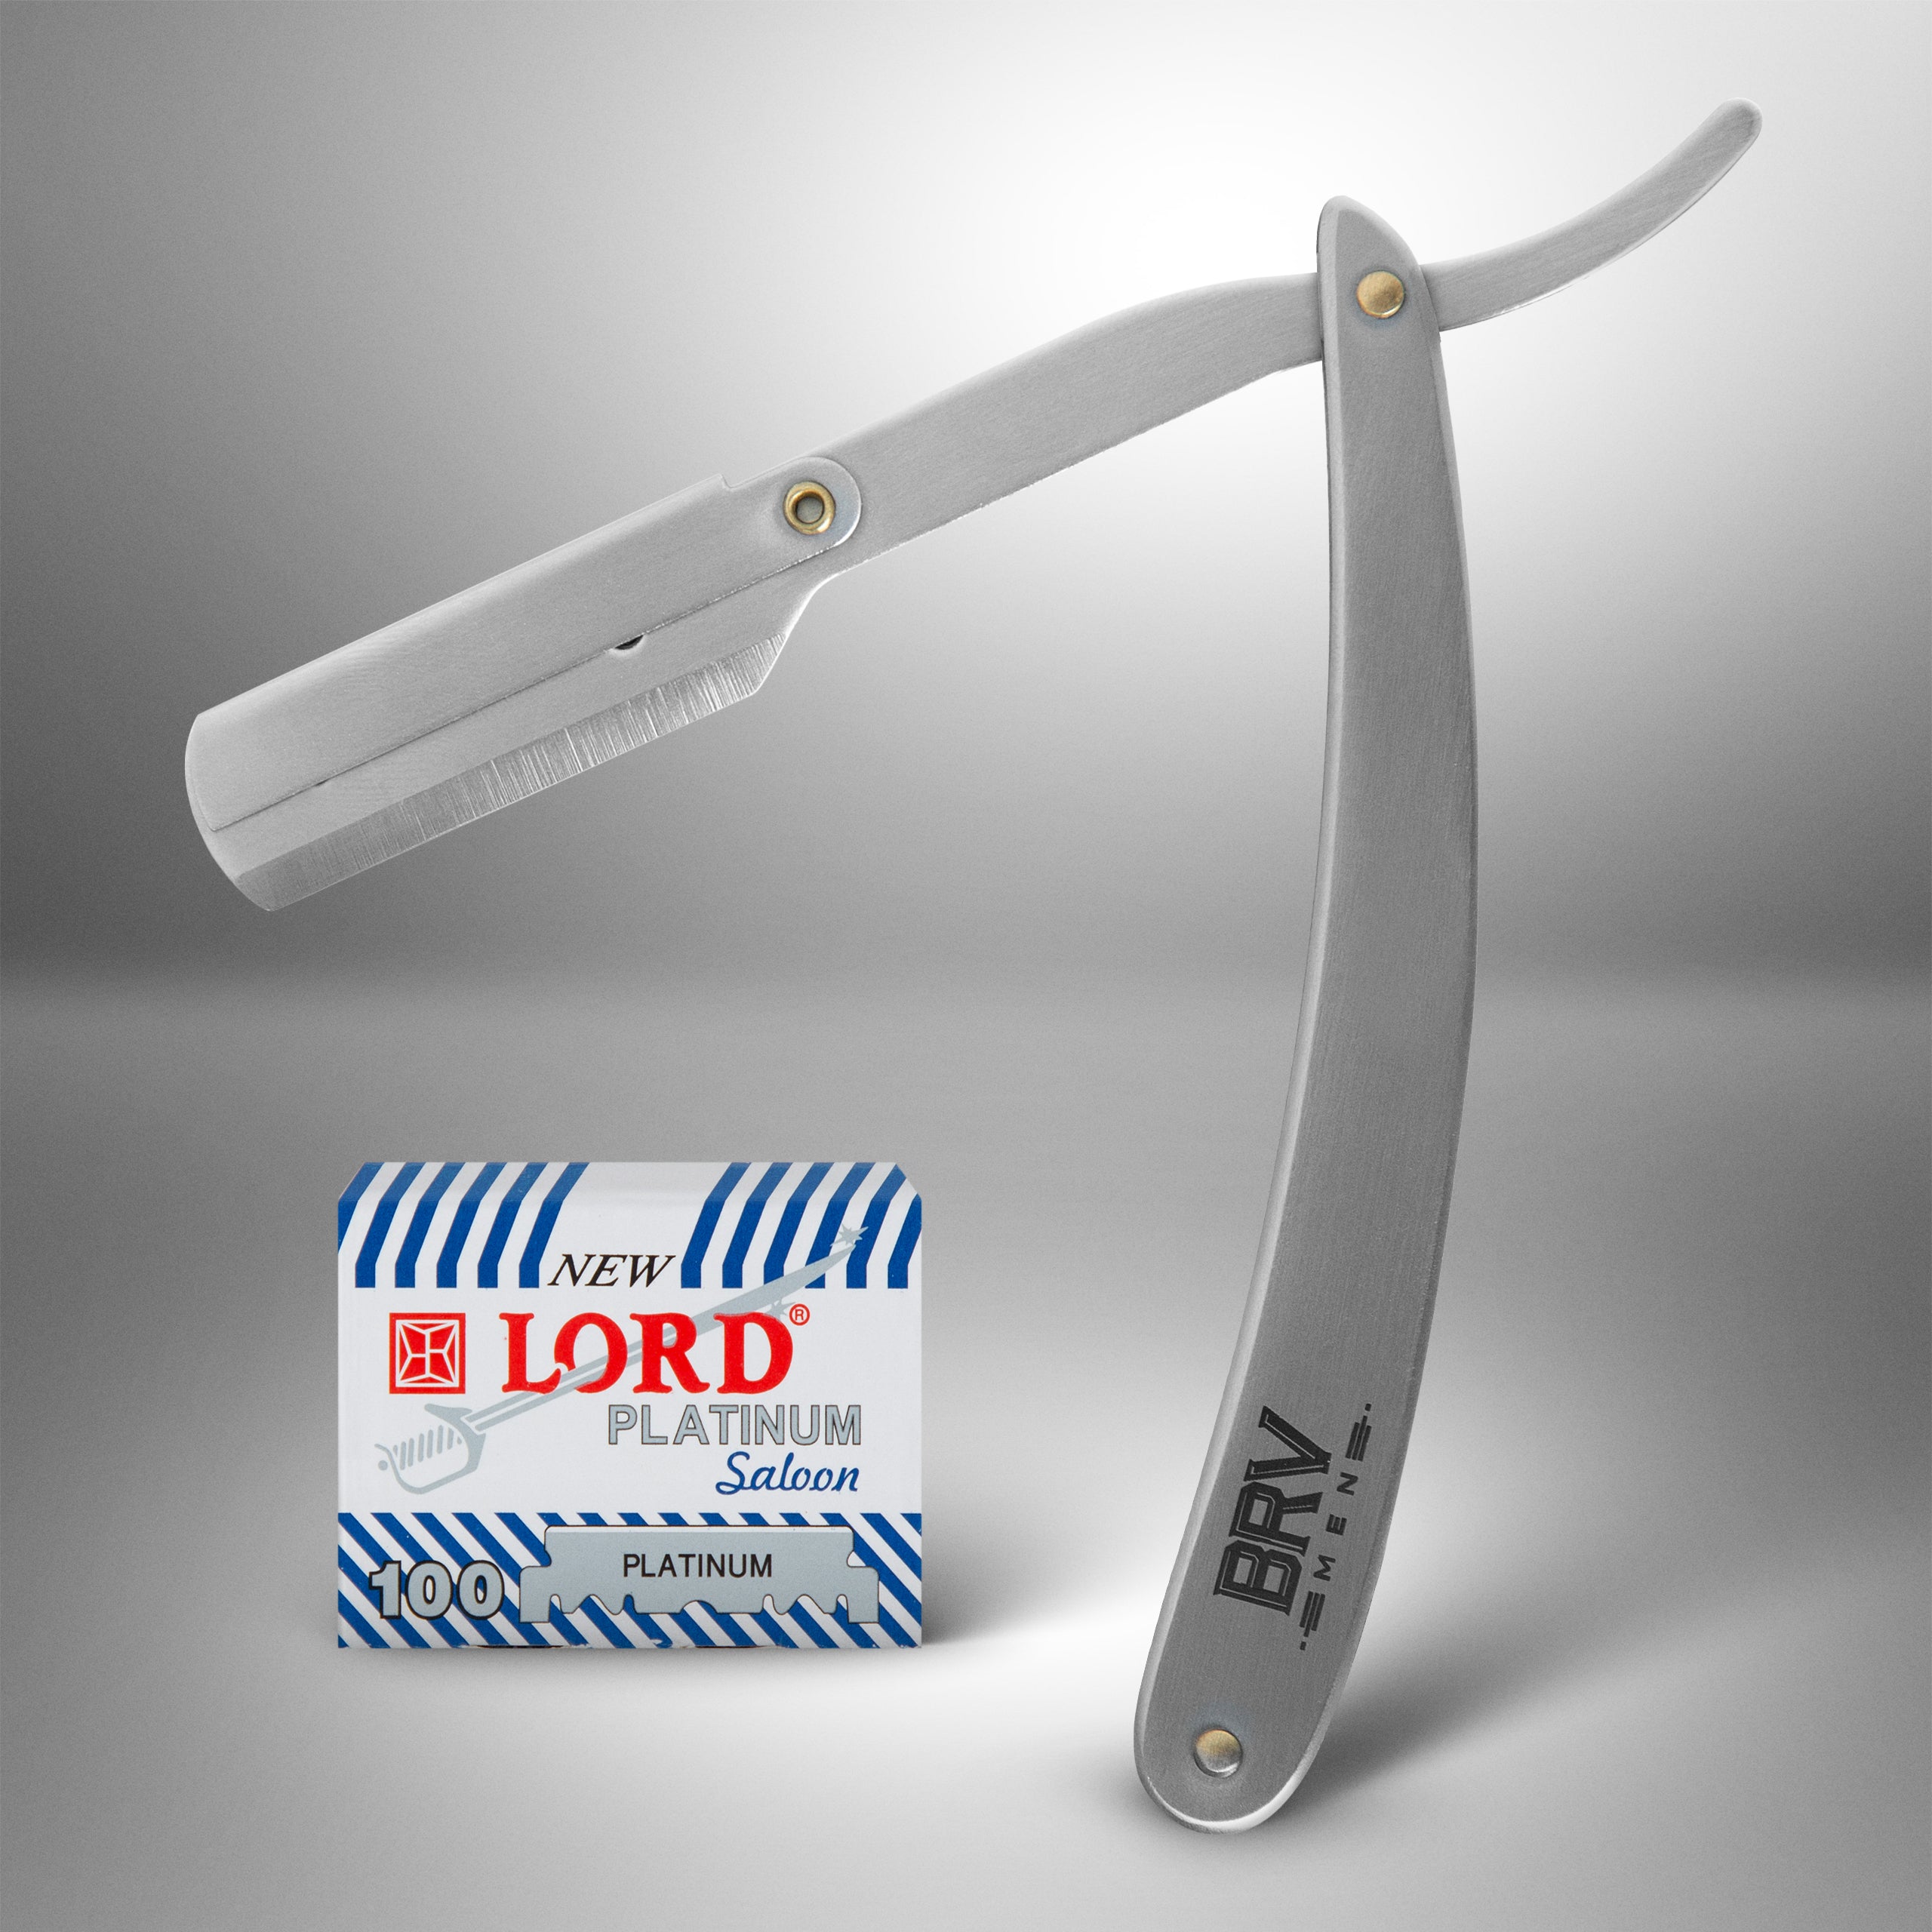 BRV MEN Rounded-Tip Small Trim Scissors for Men 4.2 | 100% German  Stainless Steel | Nose Hair Scissors for Men | Professional Grooming  Scissors for